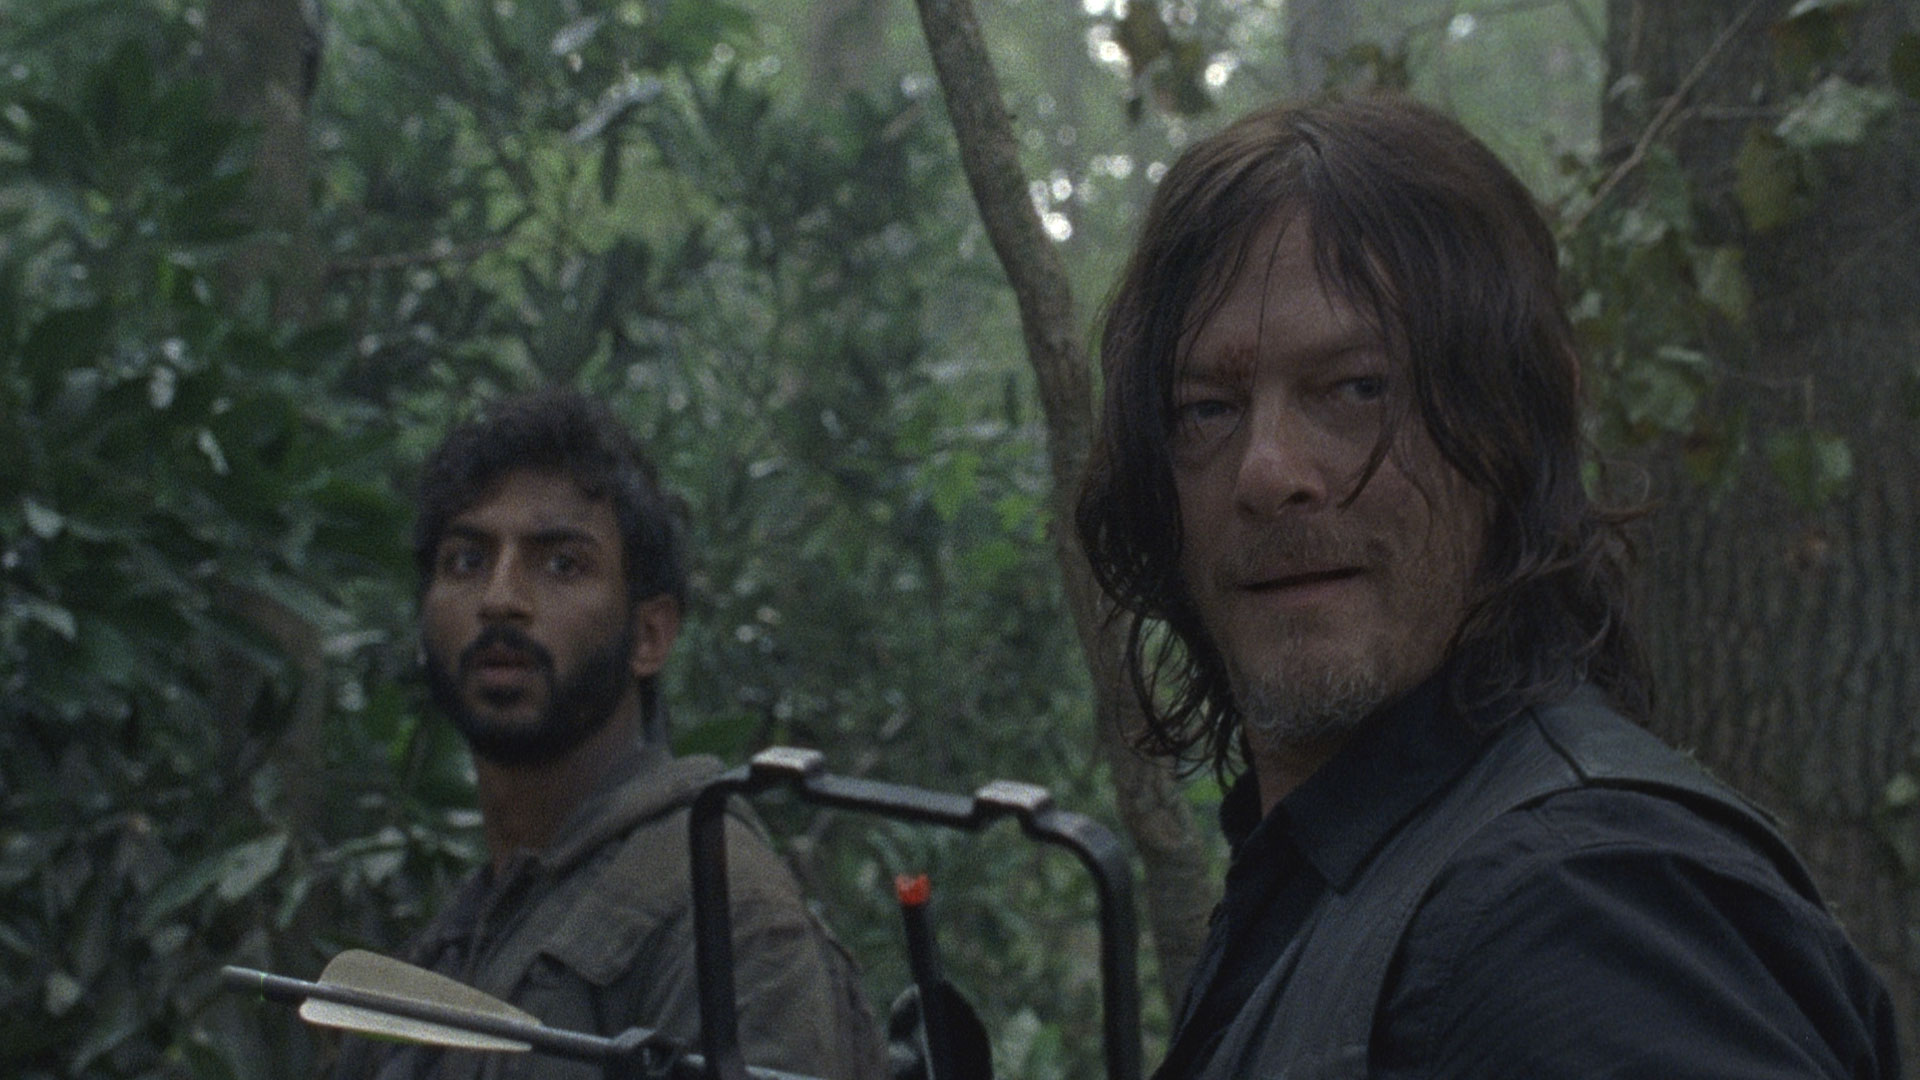 Sneak Peek of The Walking Dead: Season 8, Episode 11 | Watch The Walking Dead Video Extras | AMC